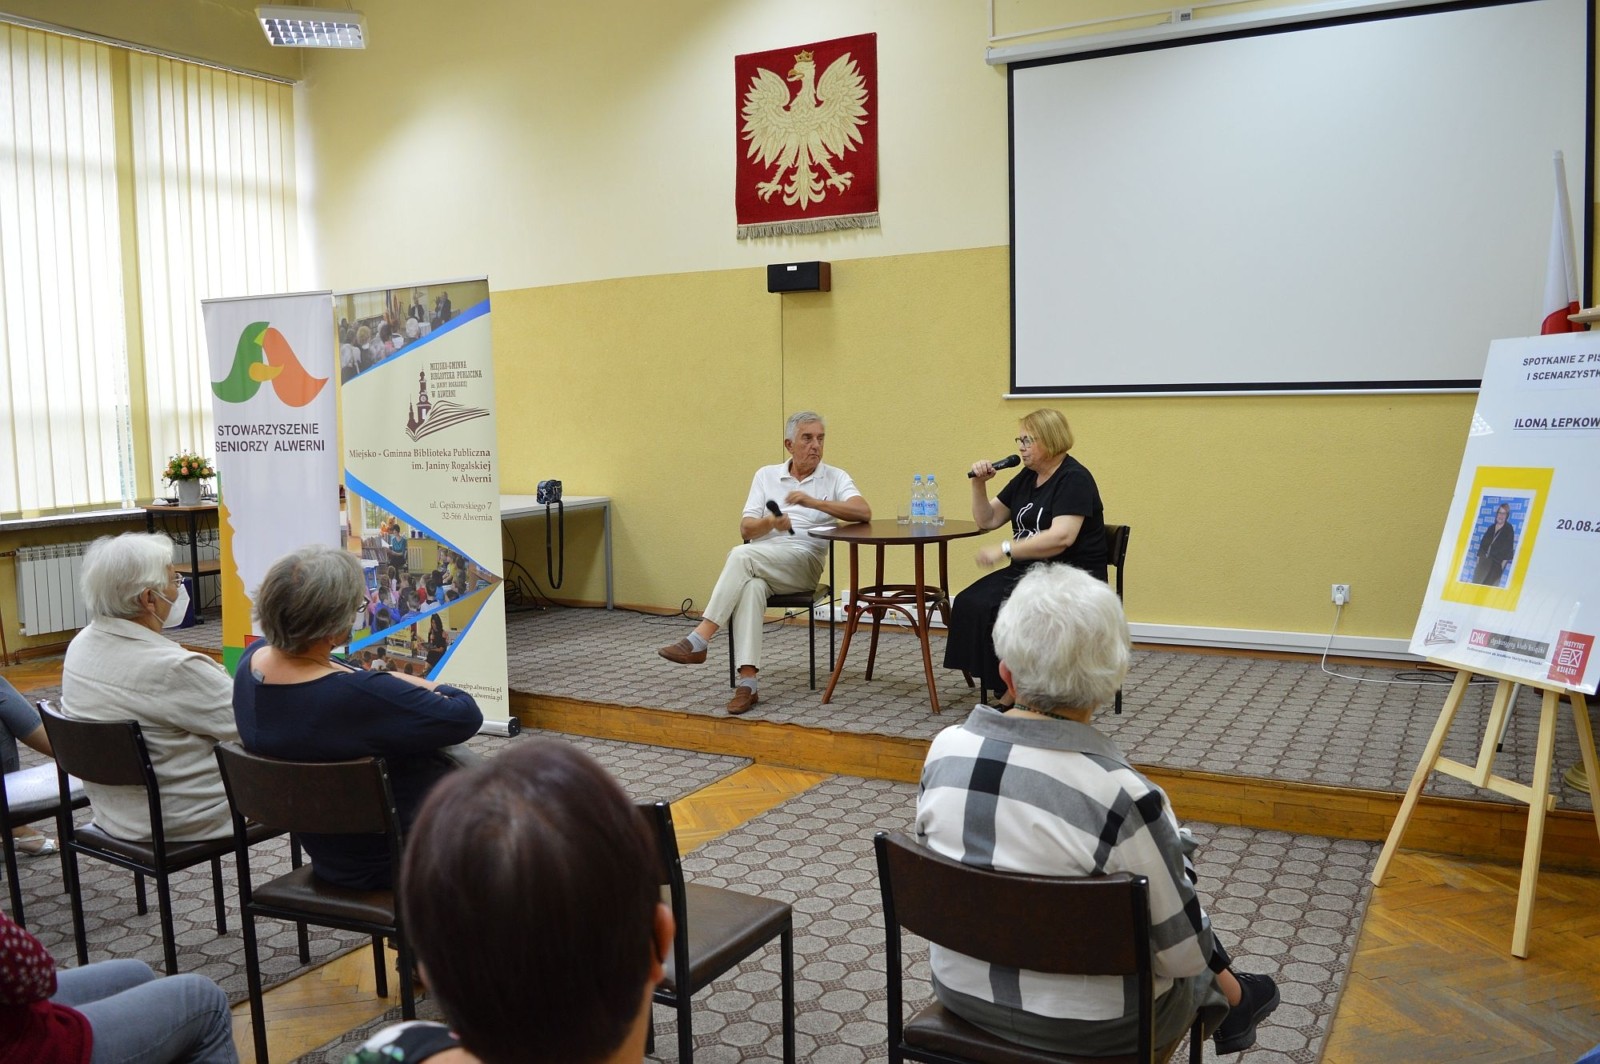 Spotkanie z pisarką i scenarzystką Iloną Łepkowską, Alwernia 20.08.2021